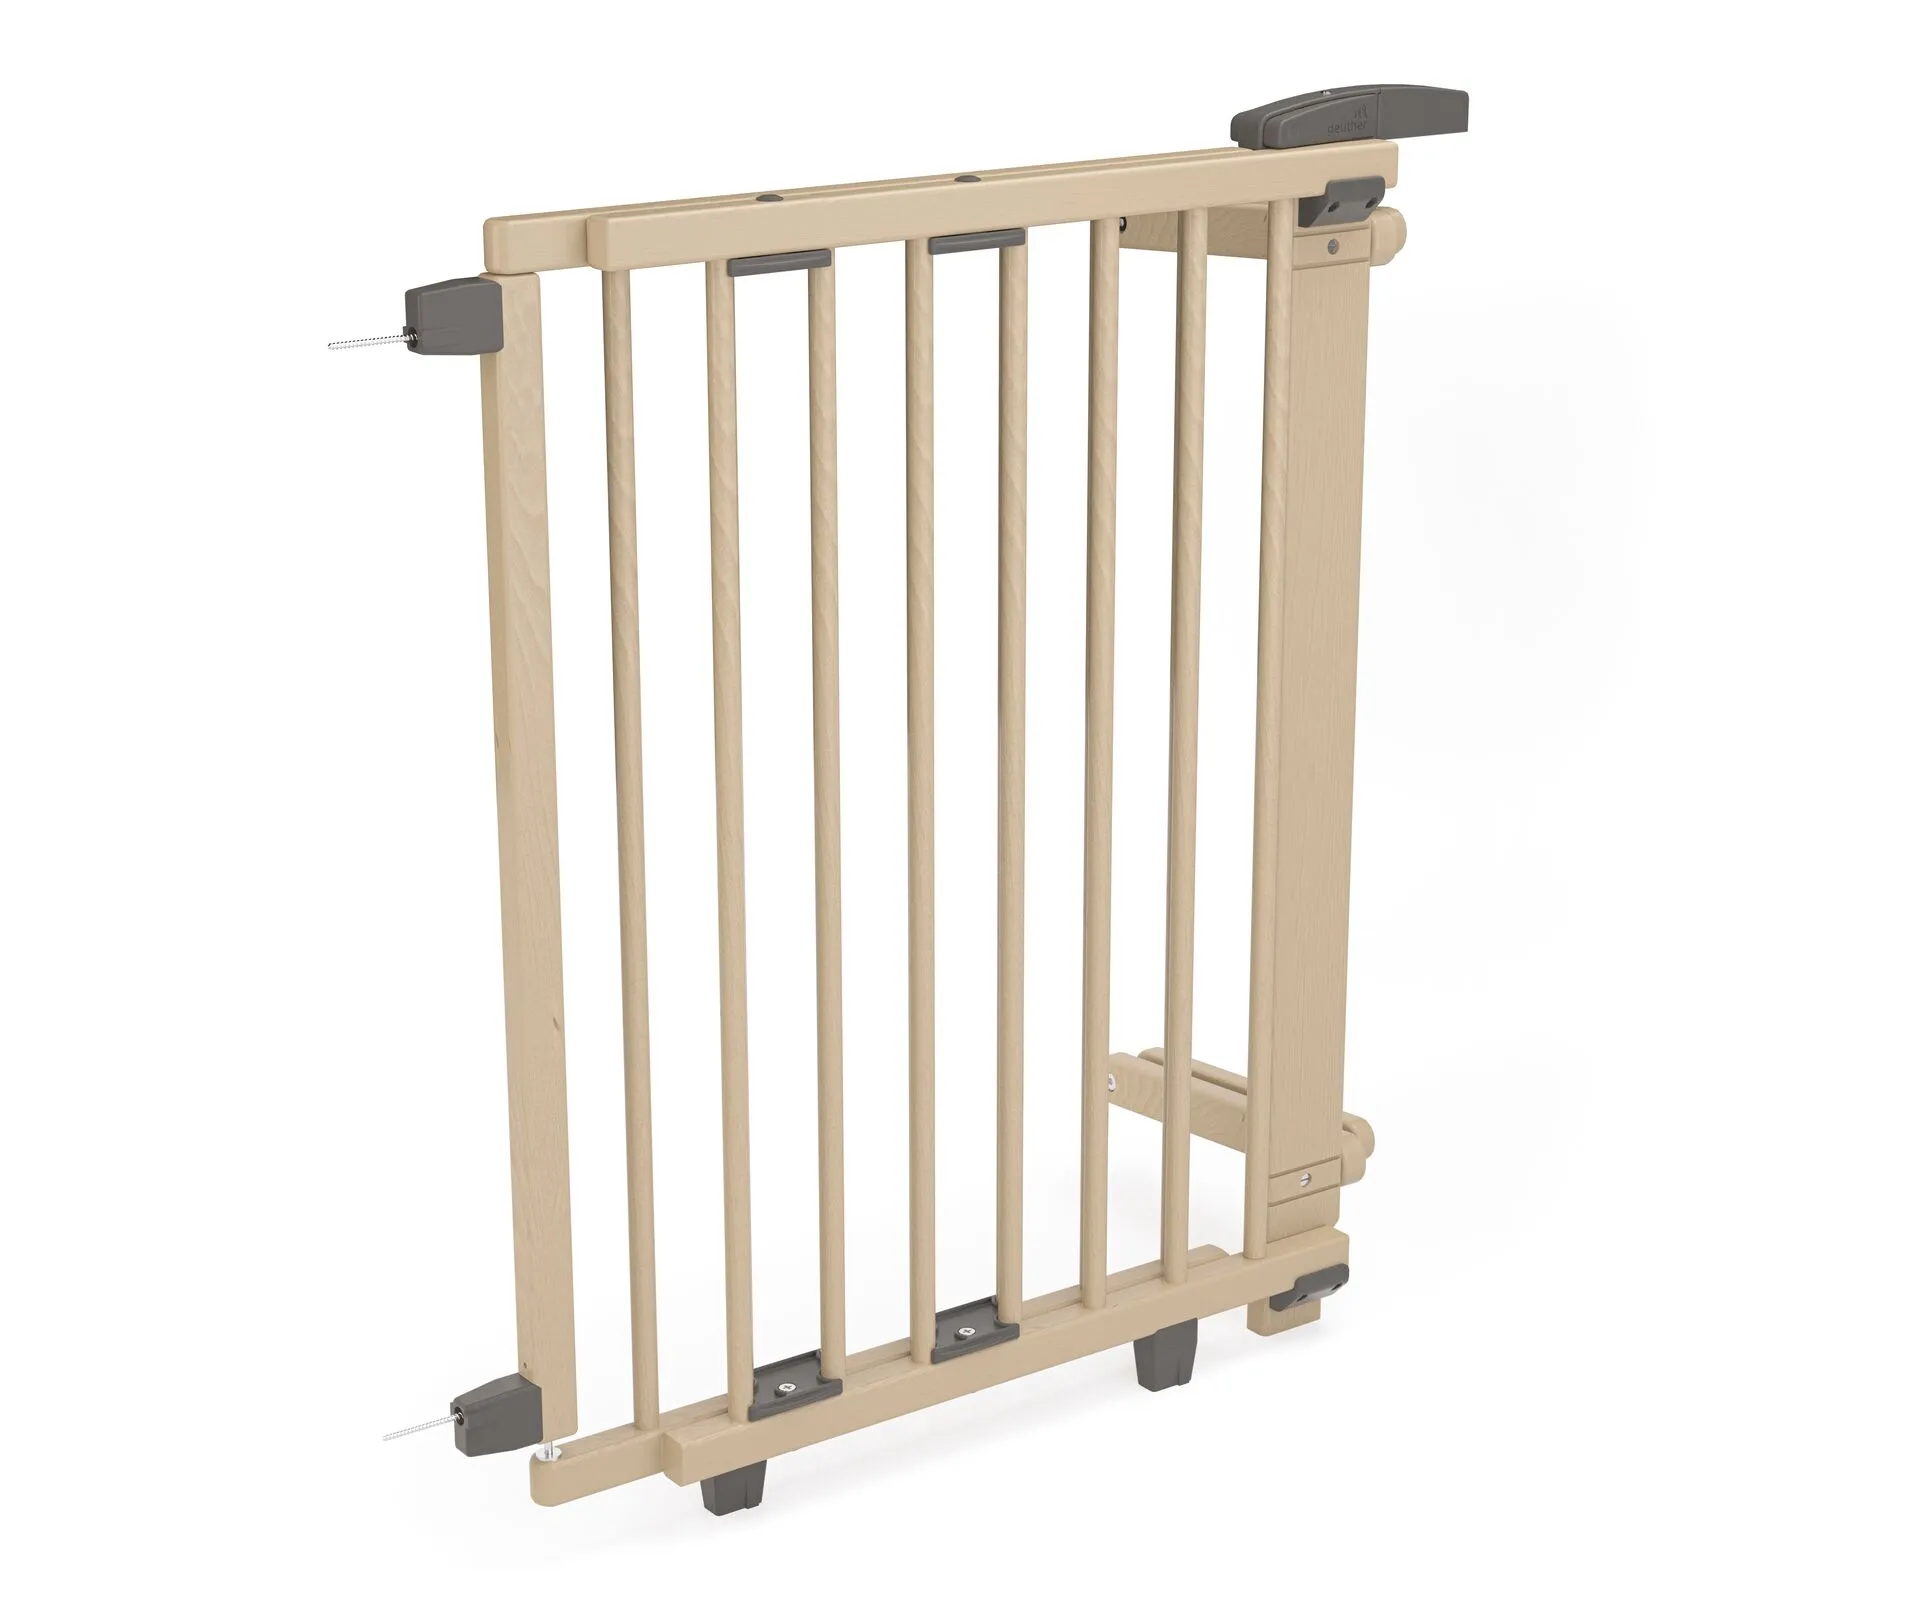 Rundstab Treppenschutzgitter 2733/2735 für Öffnungen von 67 cm - 95 cm aus Holz